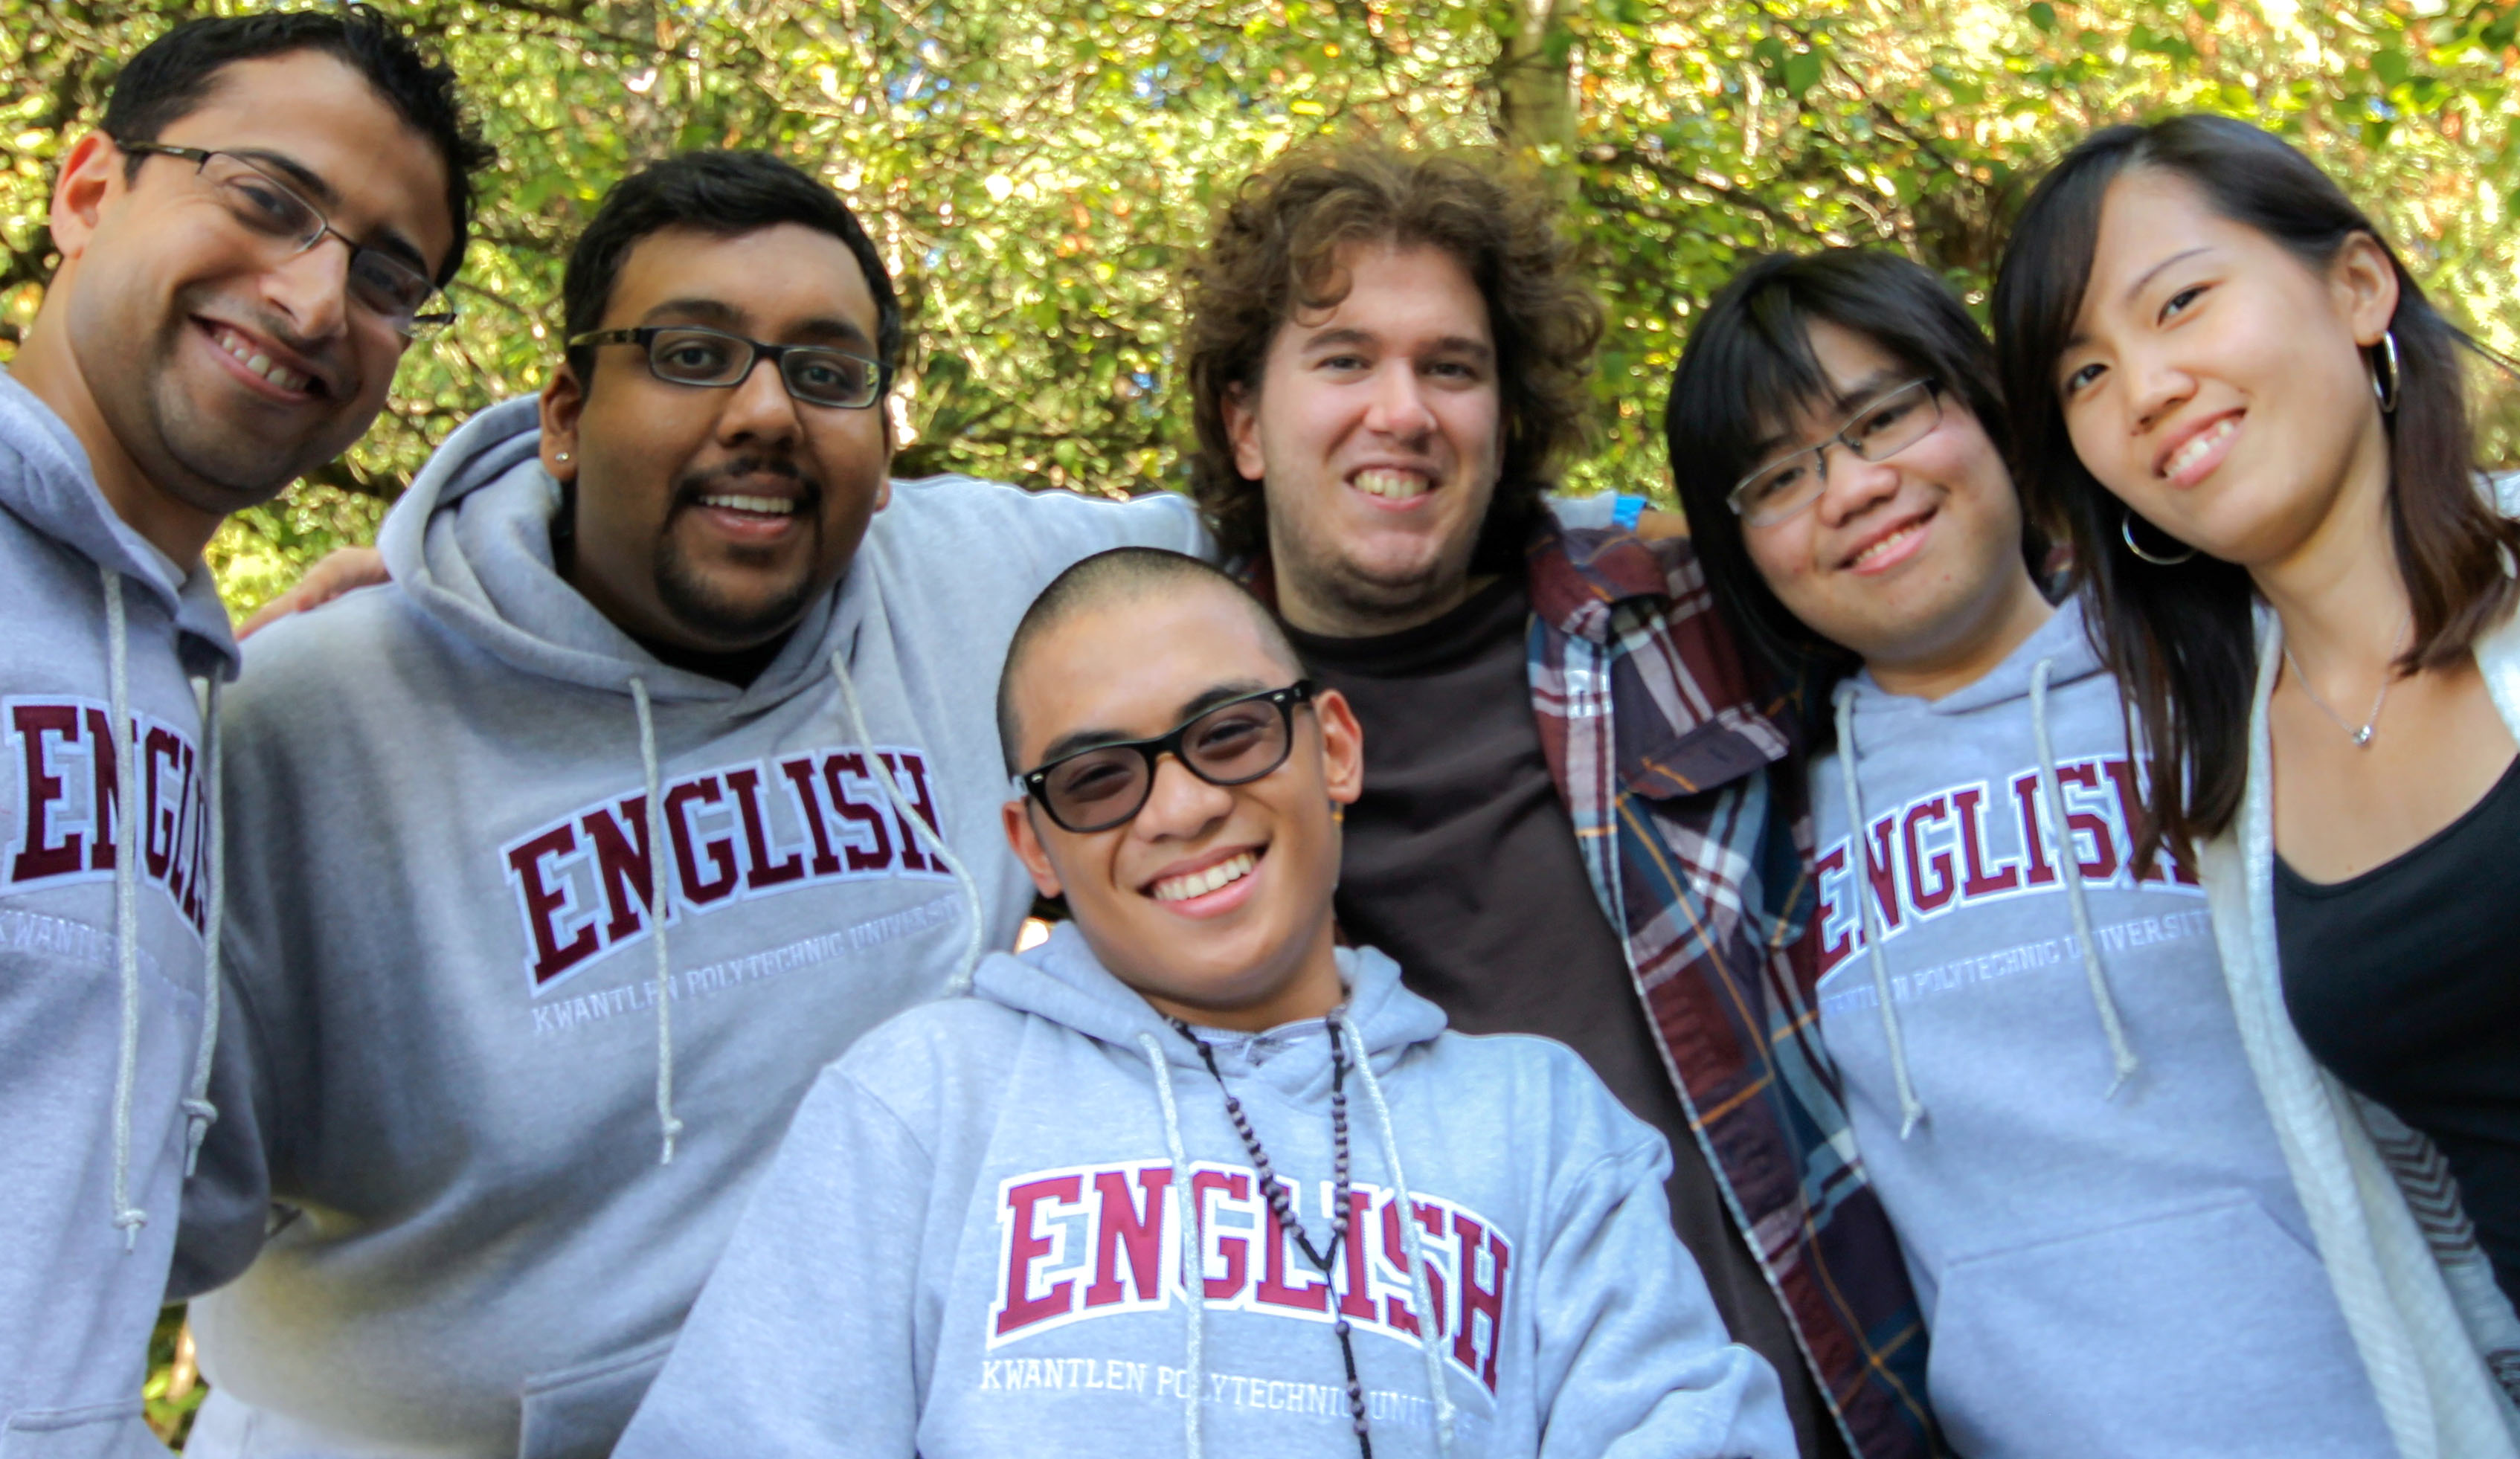 KPU English Students